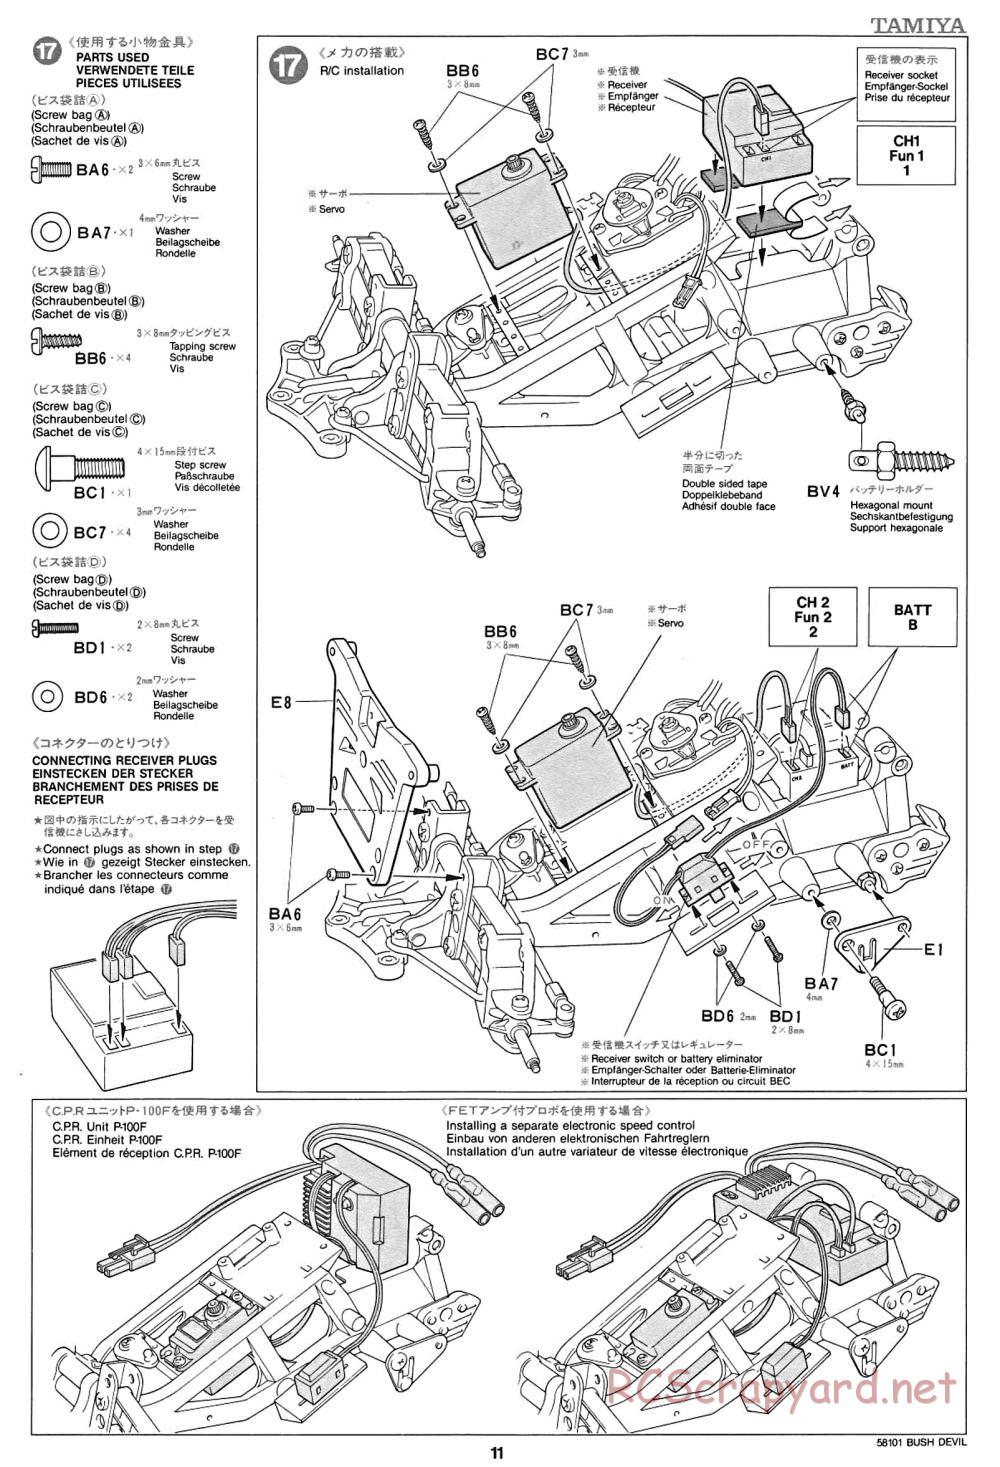 Tamiya - Bush Devil Chassis - Manual - Page 11